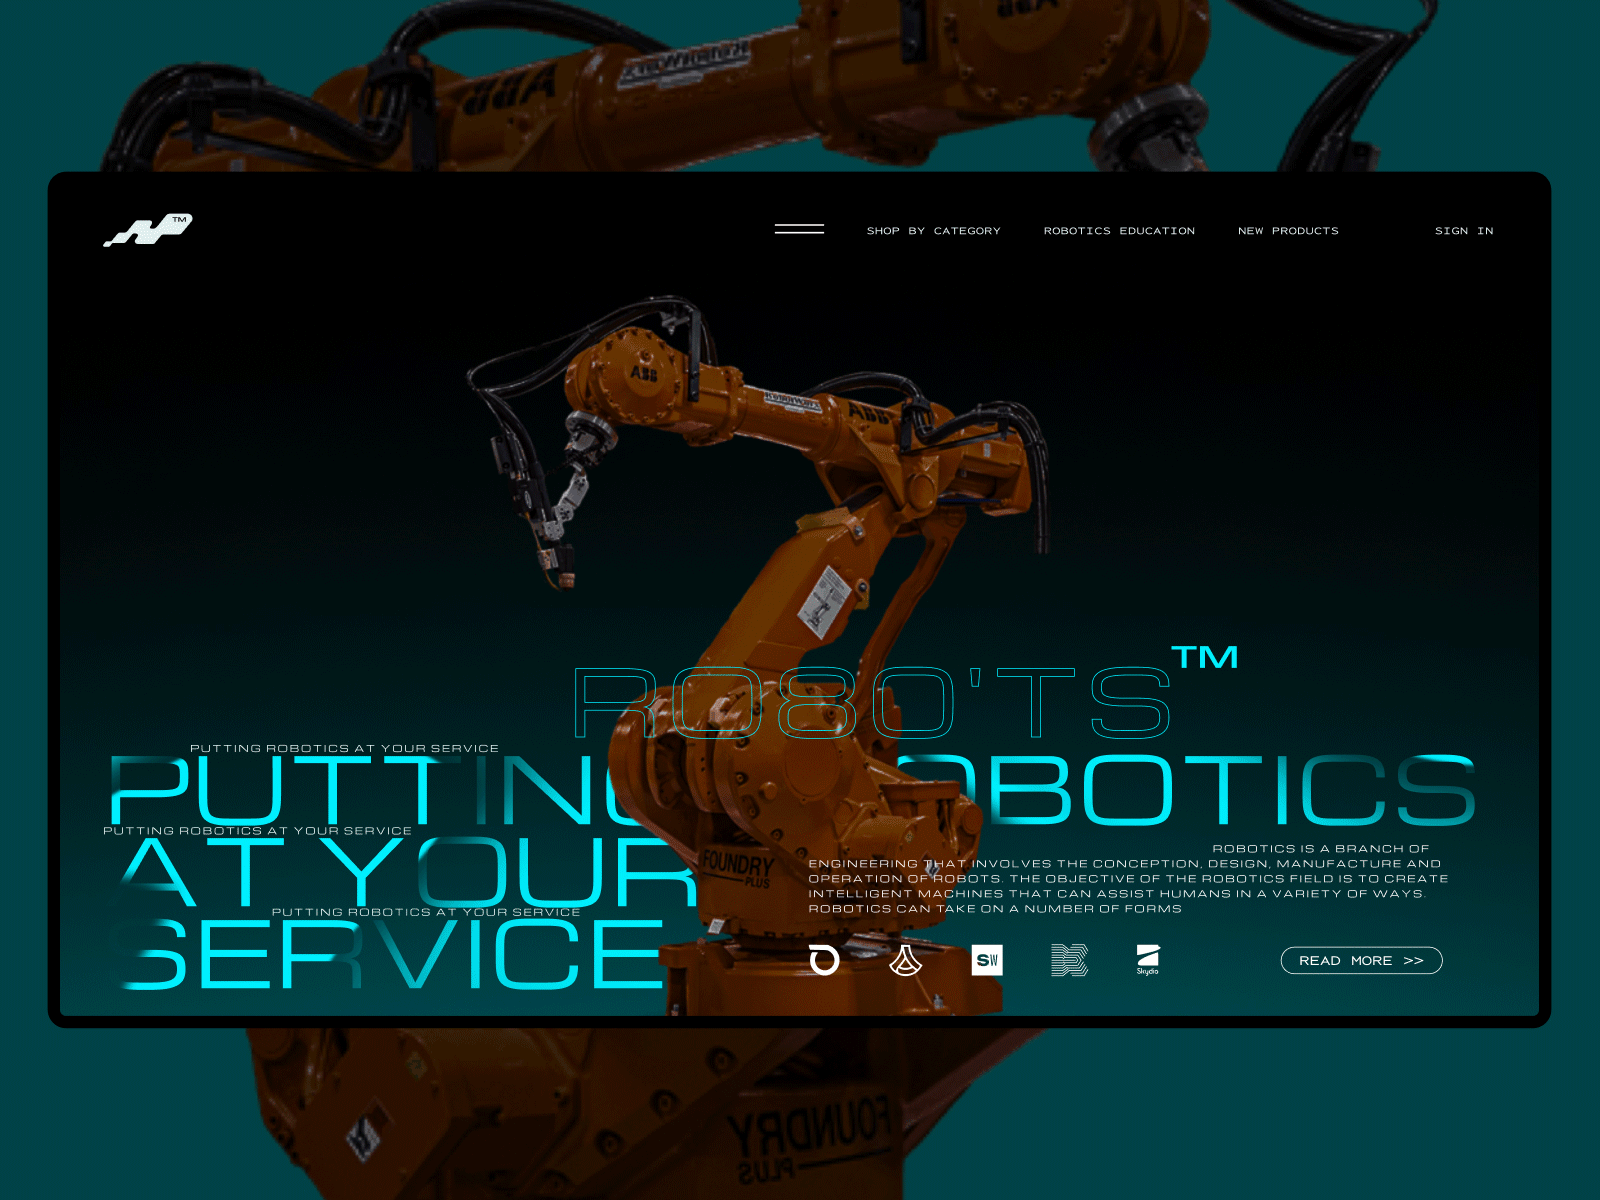 Industrial robots